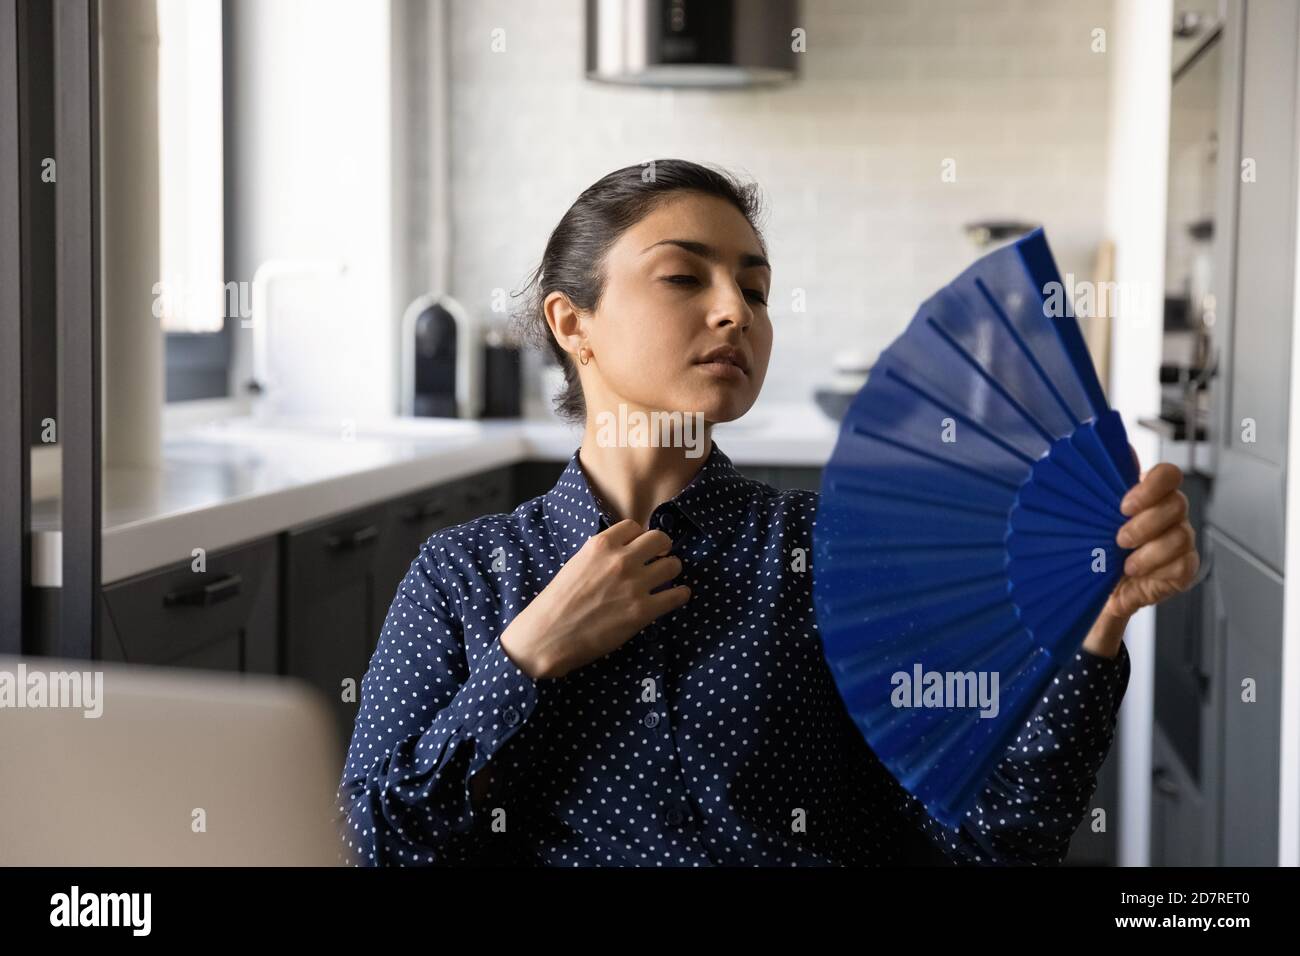 Une femme indienne surchauffée souffre d'un coup de chaleur à l'intérieur Banque D'Images